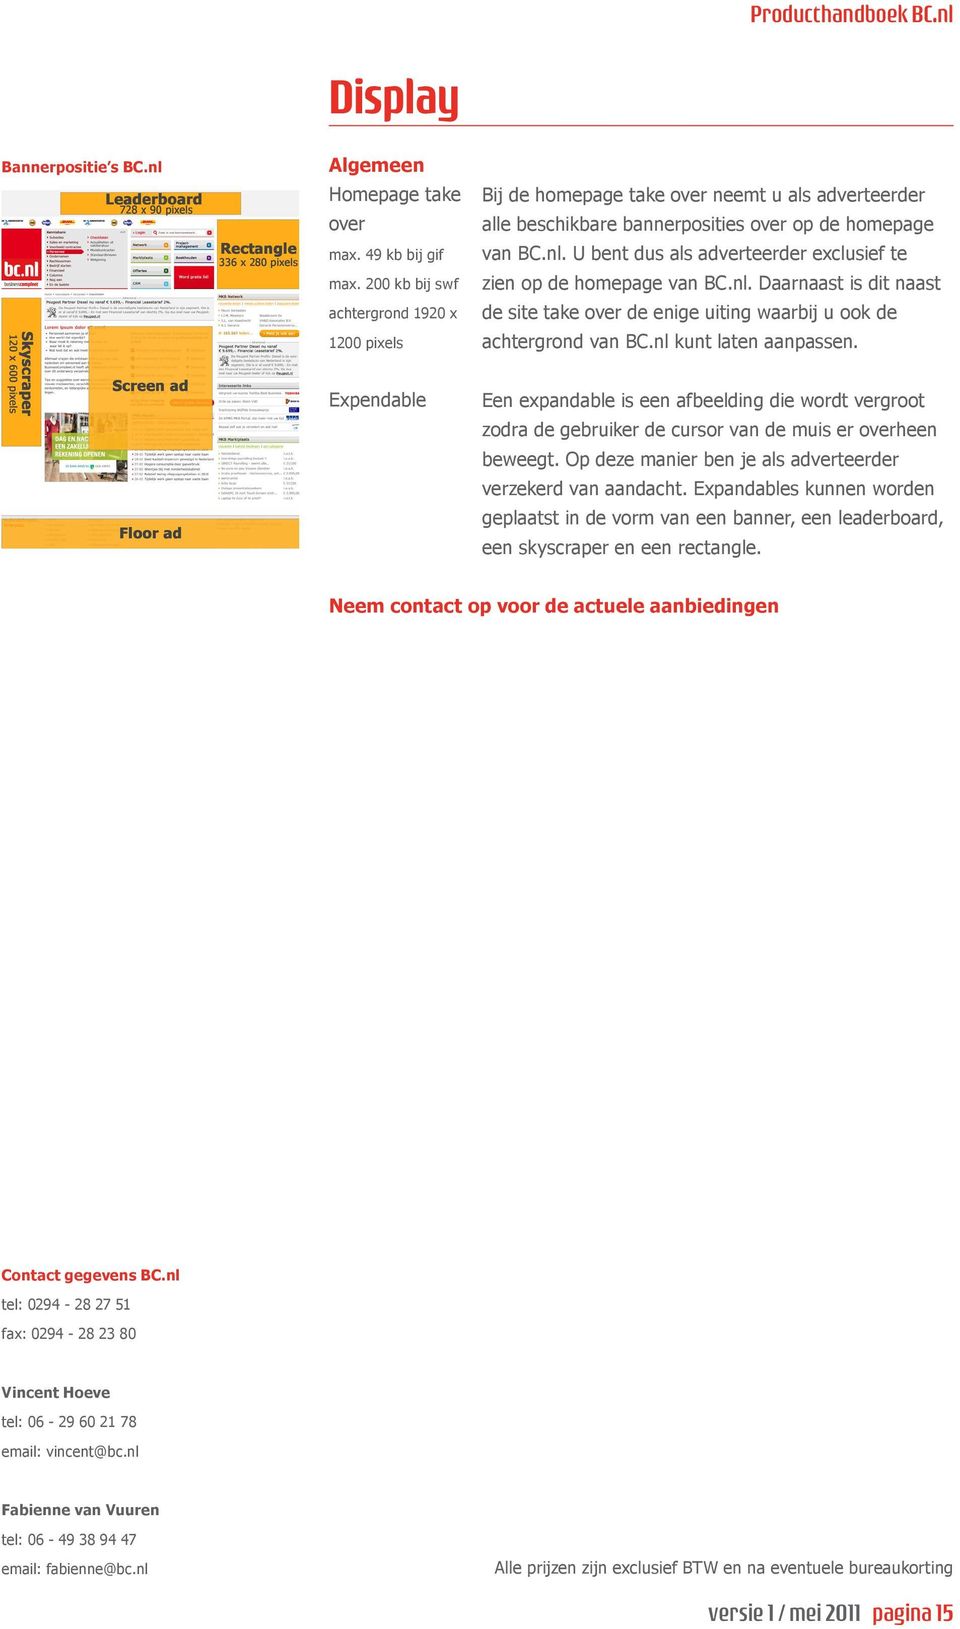 U bent dus als adverteerder exclusief te zien op de homepage van BC.nl. Daarnaast is dit naast de site take over de enige uiting waarbij u ook de achtergrond van BC.nl kunt laten aanpassen.